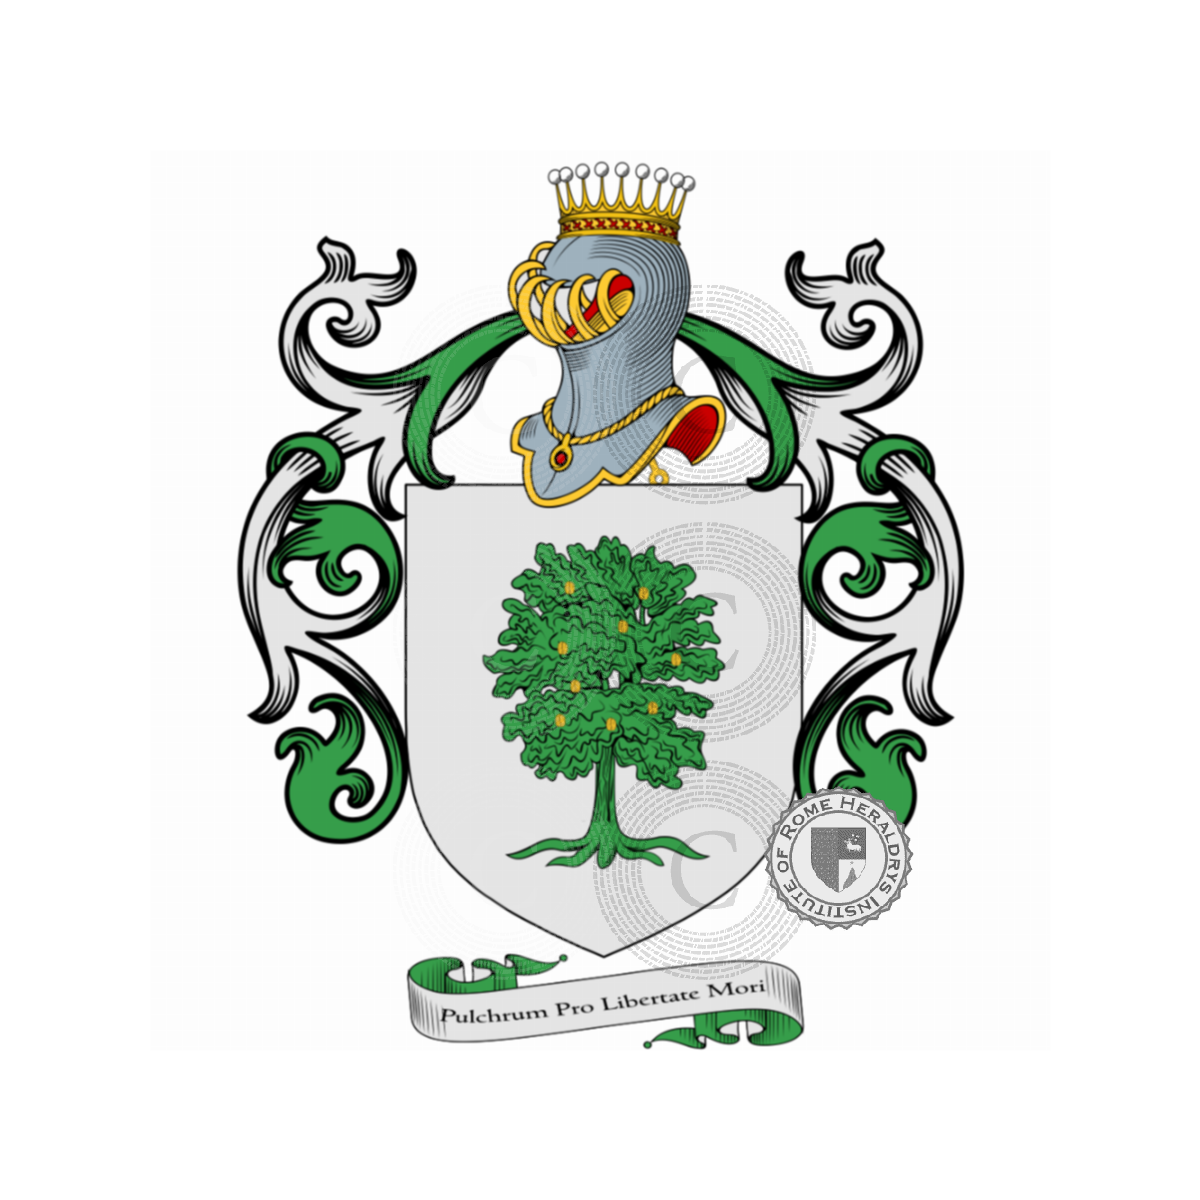 Wappen der FamilieFacchinetti Pulazzini, Facchinetti,Fachenetti,Fachinetus